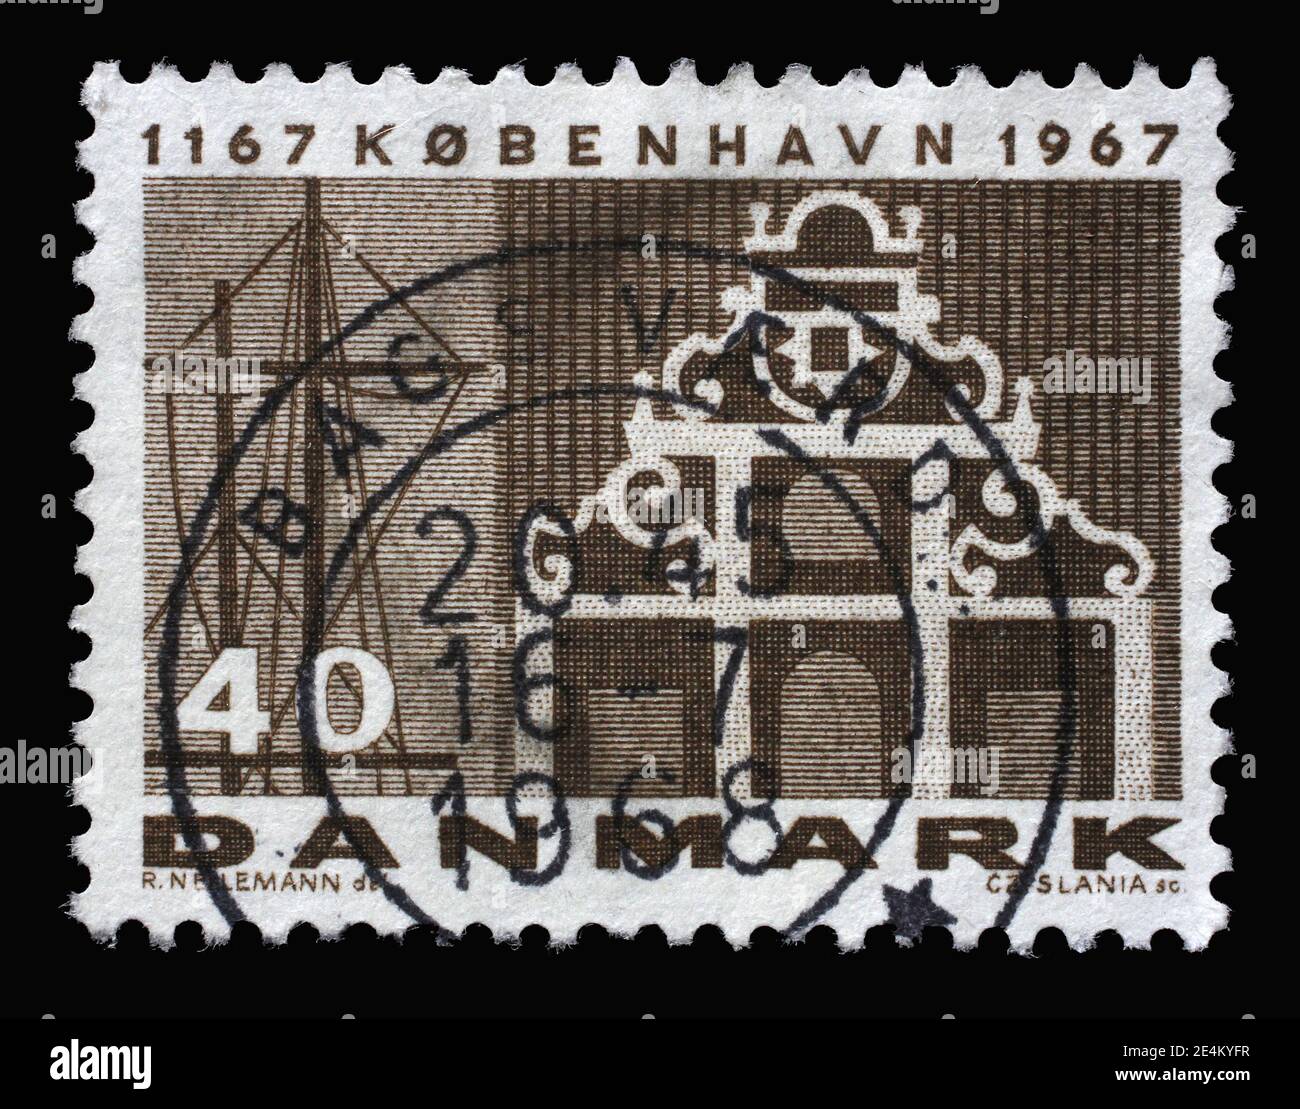 Timbre imprimé au Danemark en l'honneur du 800e anniversaire de Copenhague montre le port de Copenhague et la façade de la banque, vers 1967 Banque D'Images